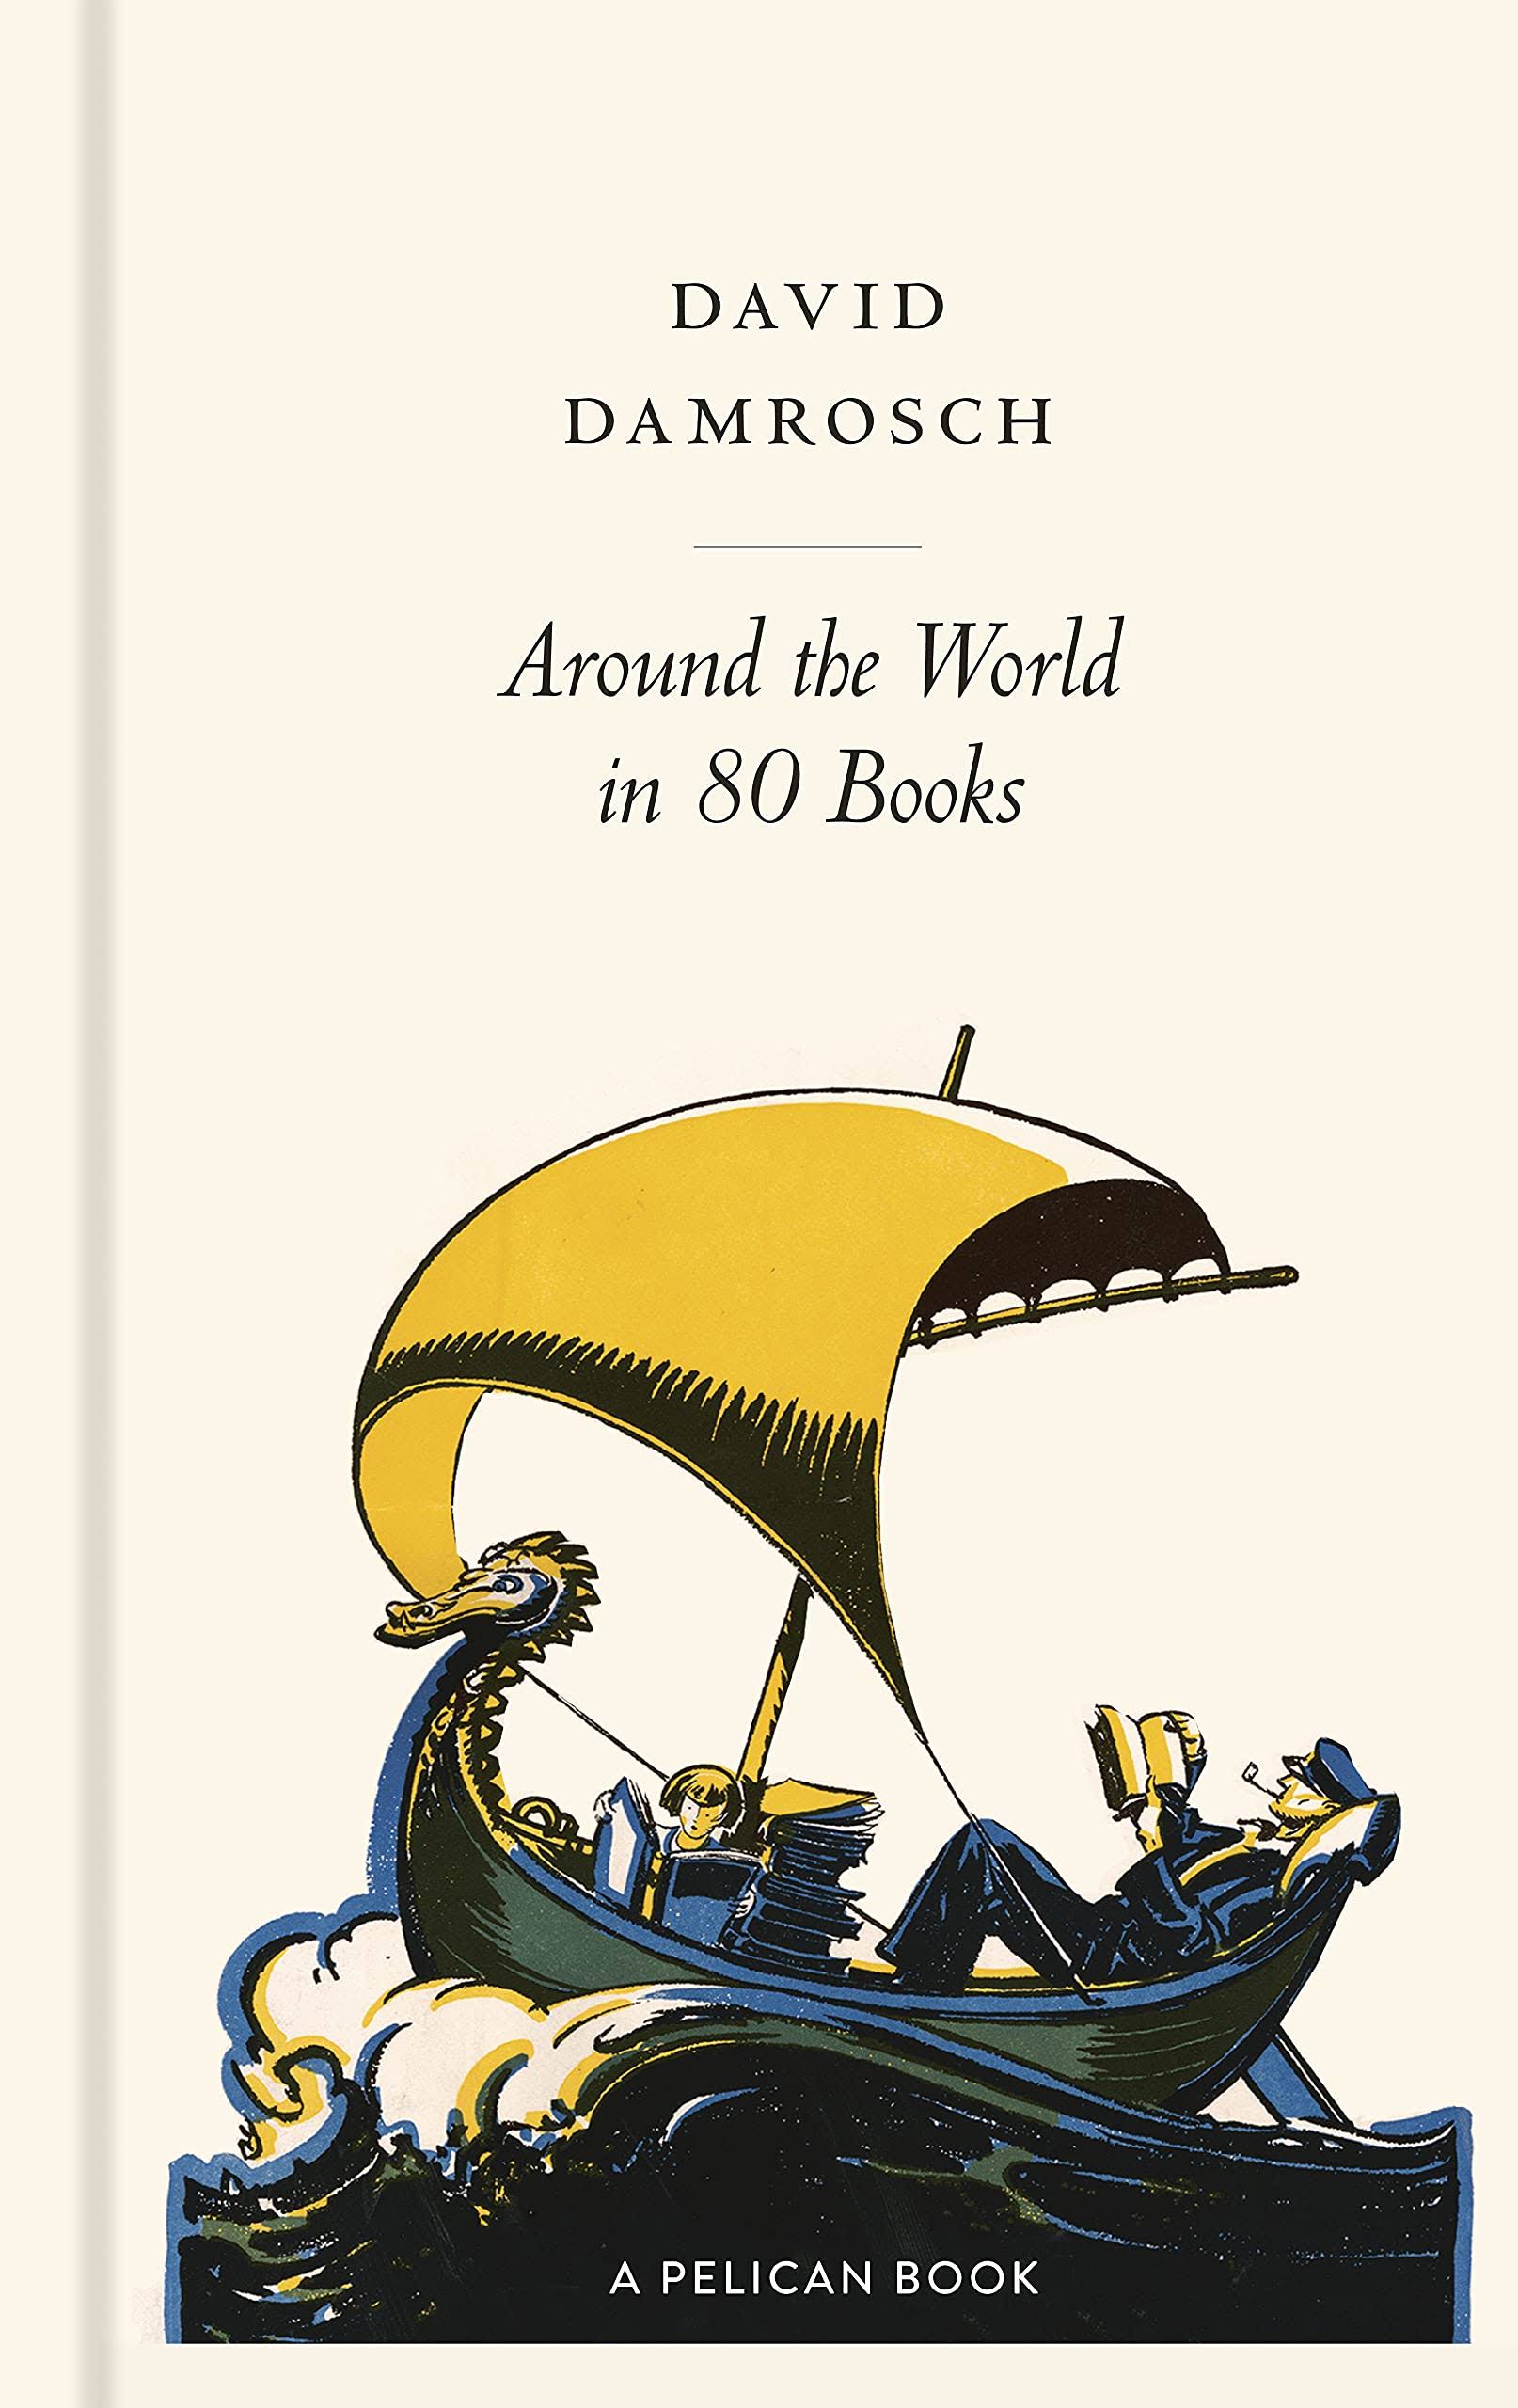 Around The World in 80 Books by David Damrosch